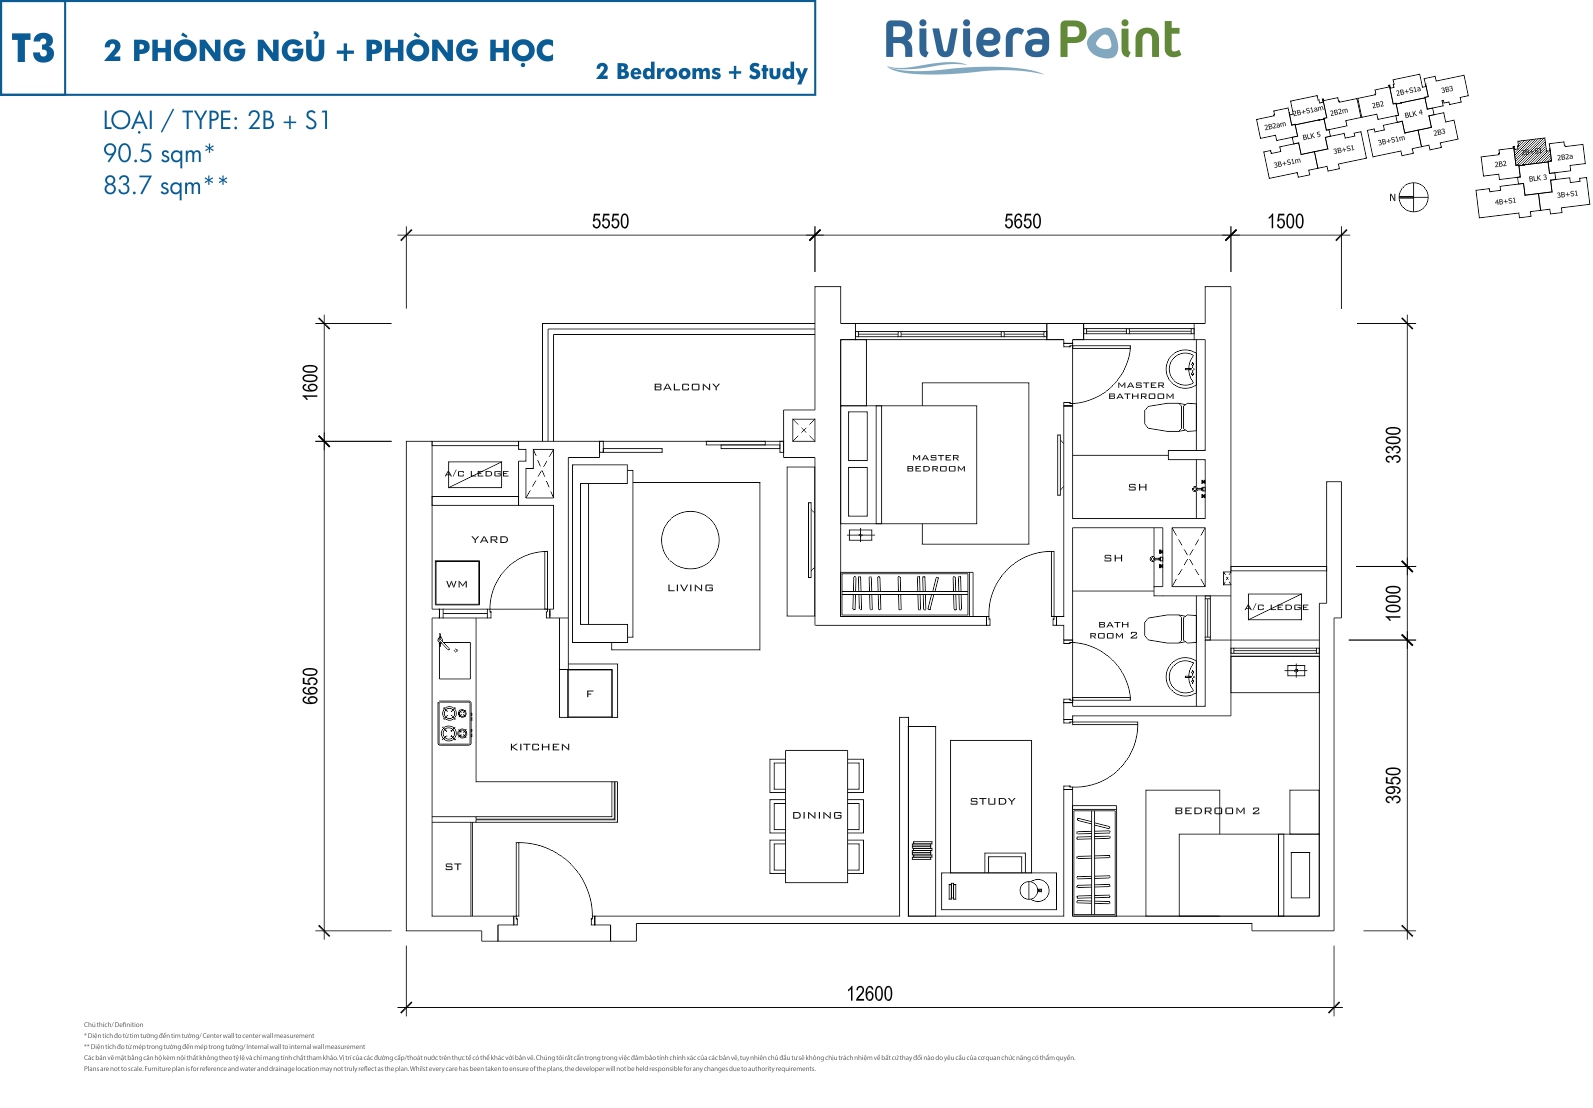 Mặt bằng căn hộ Riviera Point quận 7 layout căn 2 phòng ngủ loại 90.5m2 - T3 2PN - 2B+S1